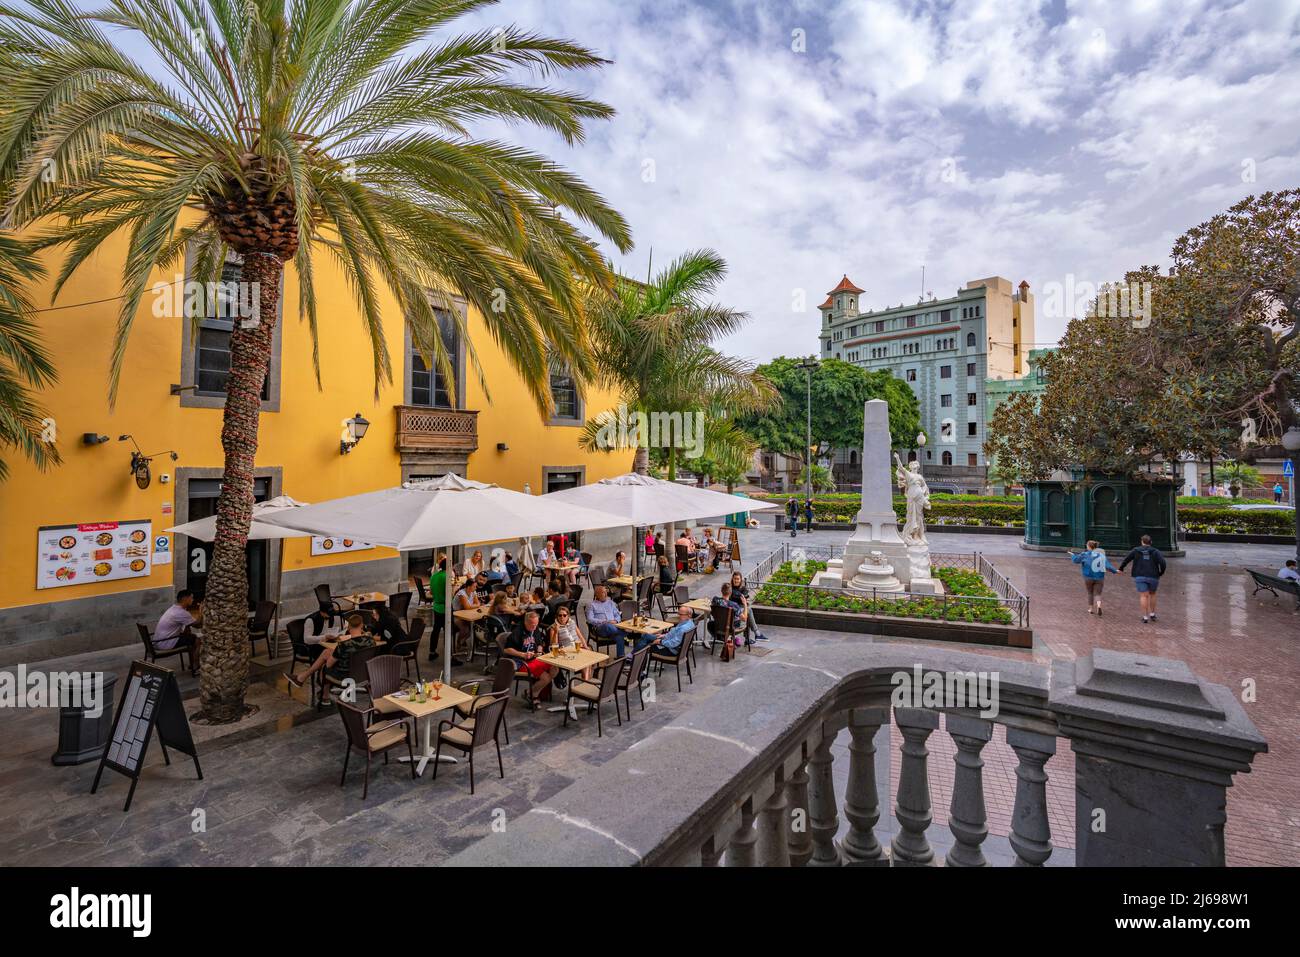 Blick auf die reich verzierte und farbenfrohe Architektur auf der Plaza de las Ranas, Las Palmas, Gran Canaria, Kanarische Inseln, Spanien, Atlantik, Europa Stockfoto